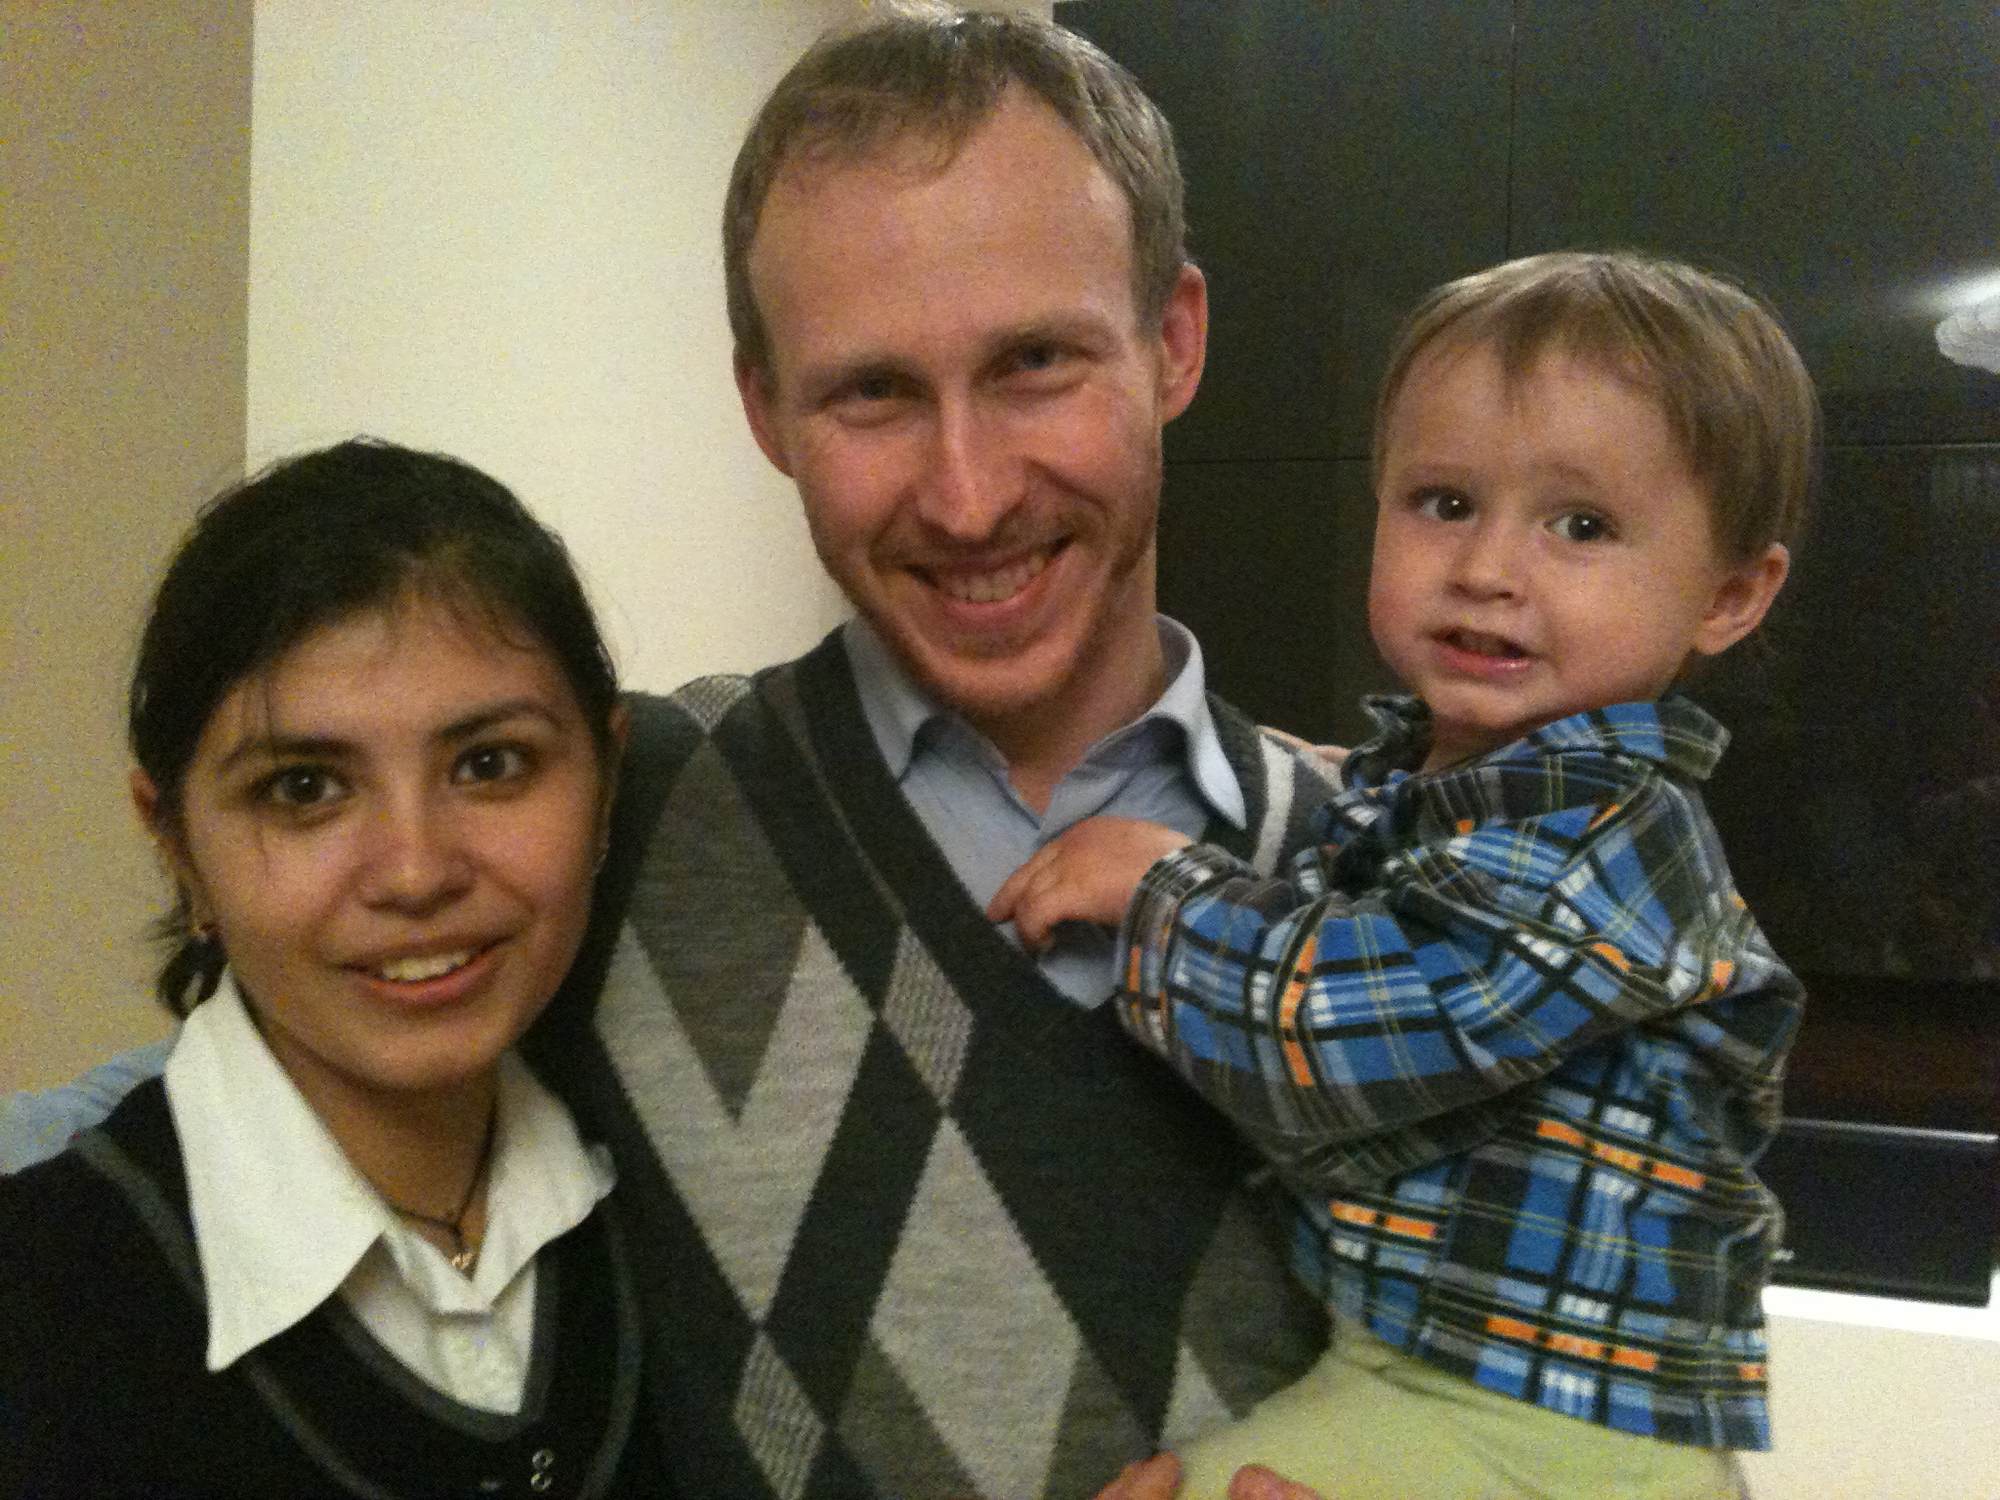 Igor Beloborodov and his family 2011